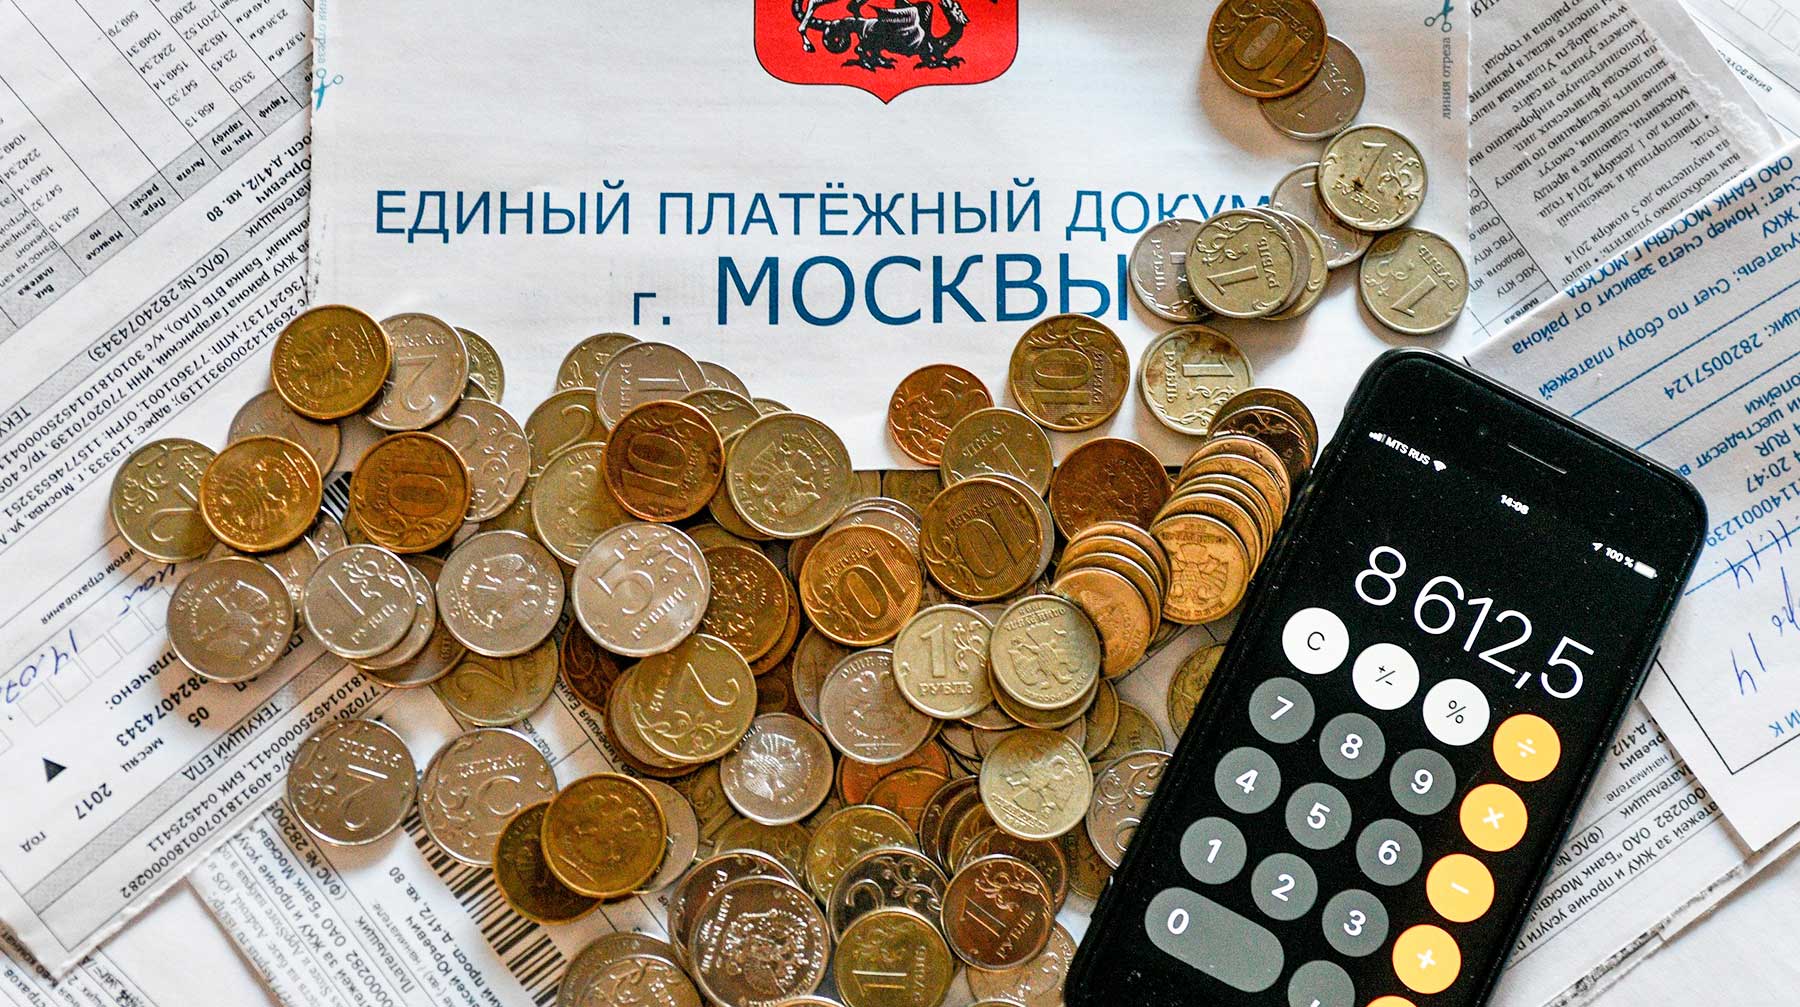 Многие граждане РФ переплачивают за услуги ЖКХ больше 100% себестоимости, заявил глава службы Игорь Артемьев undefined